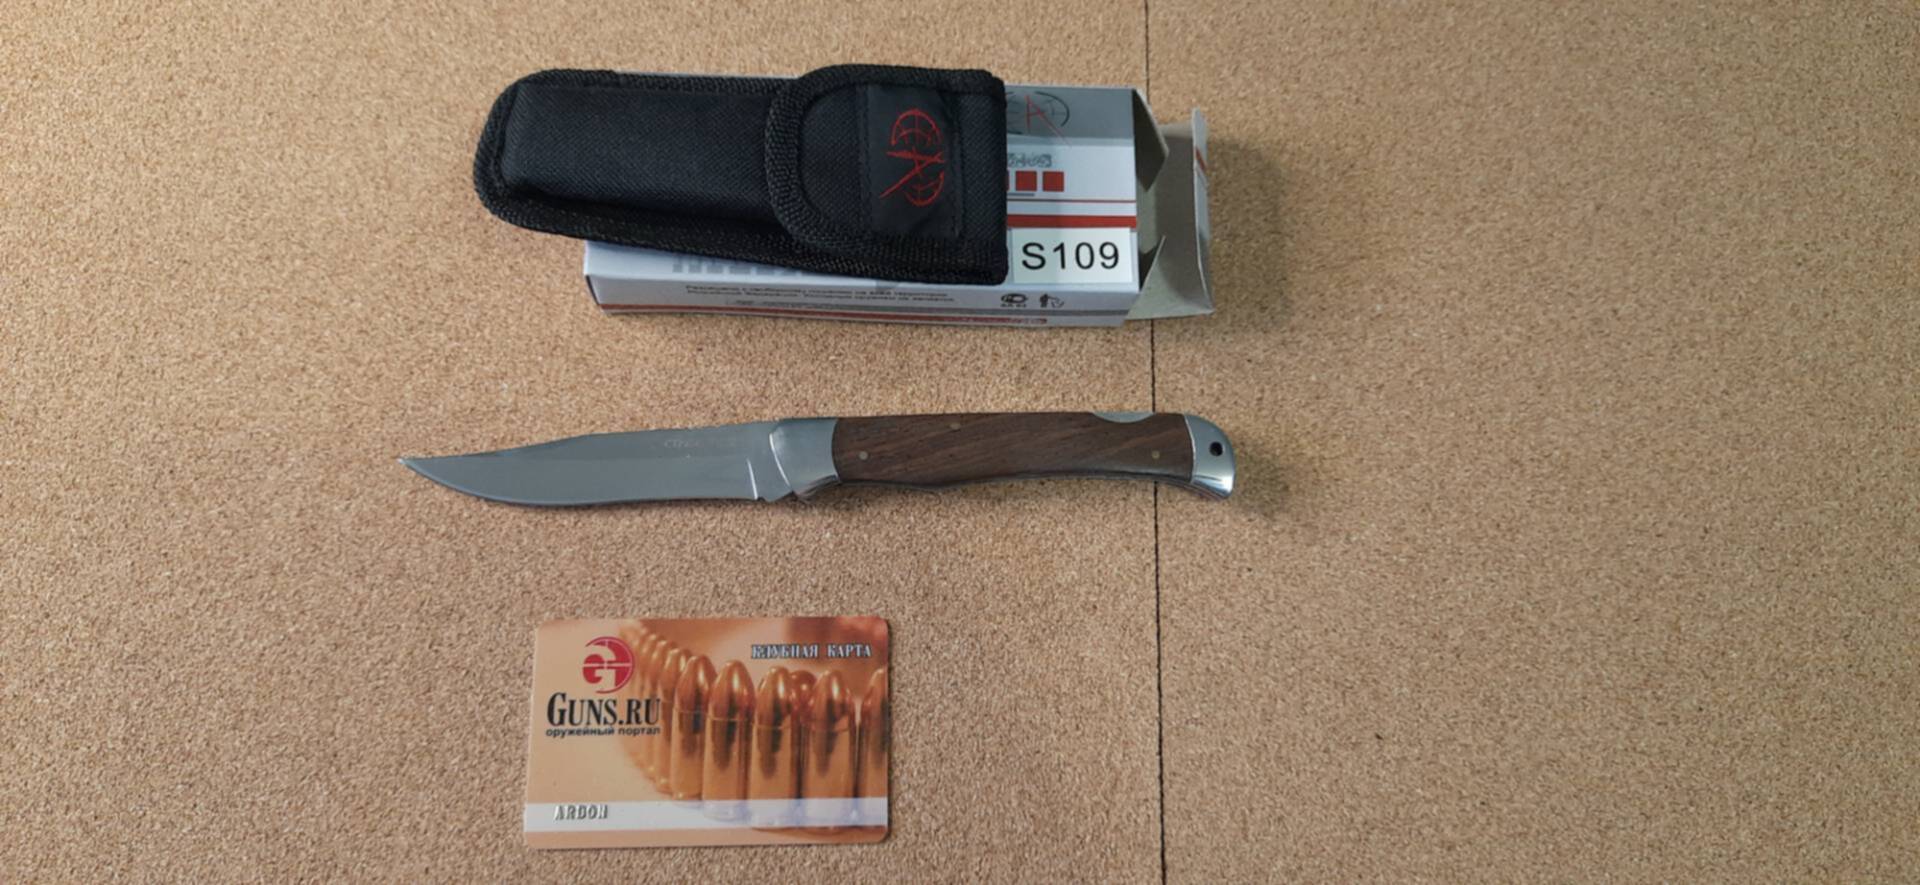 20tokens ножевые. Luxe sale нож. Распродажа ножей в связи с закрытием.